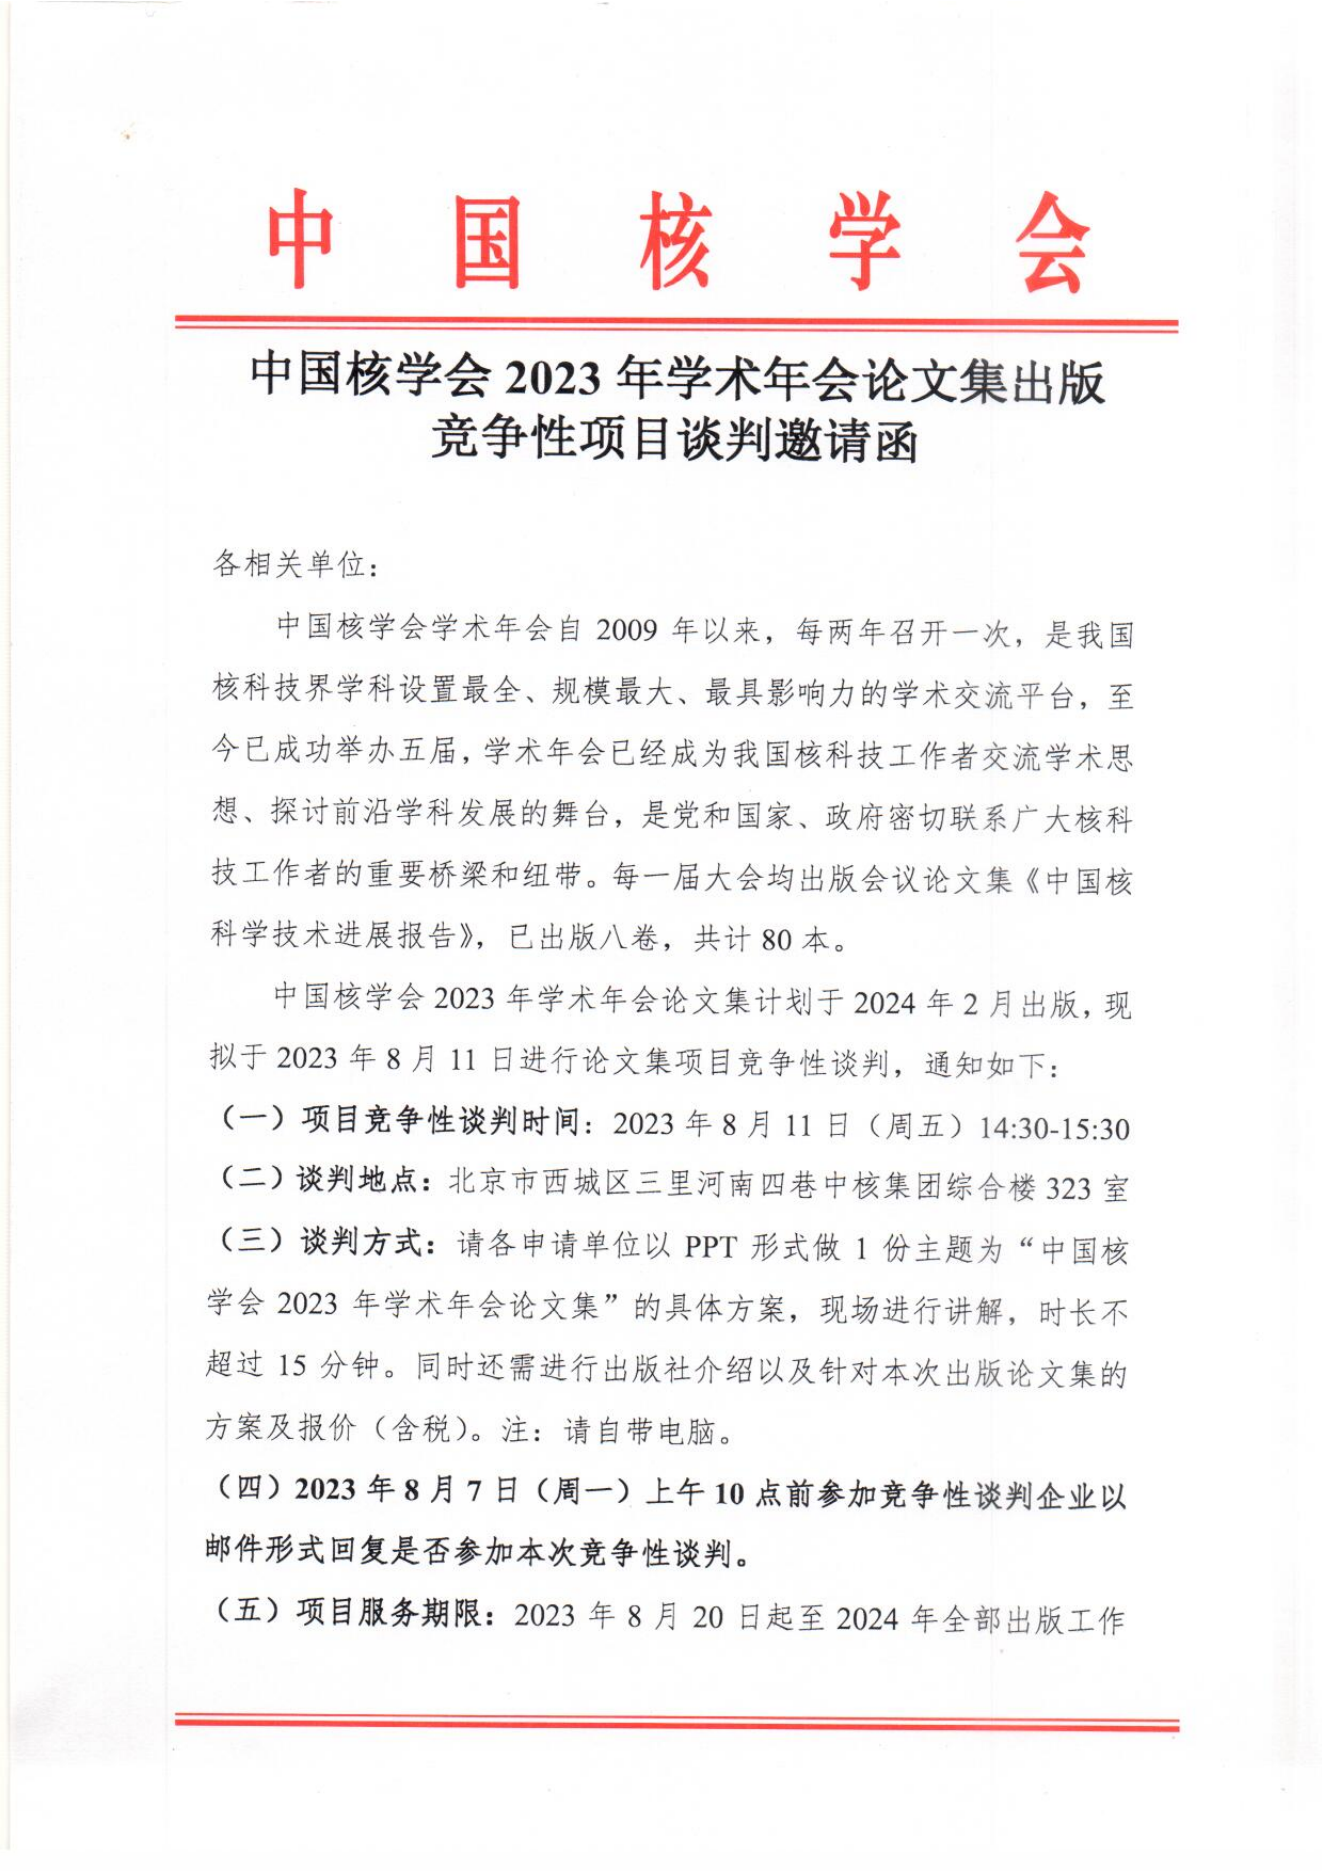 中国核学会2023年学术年会论文集竞争性谈判邀请函_00.png